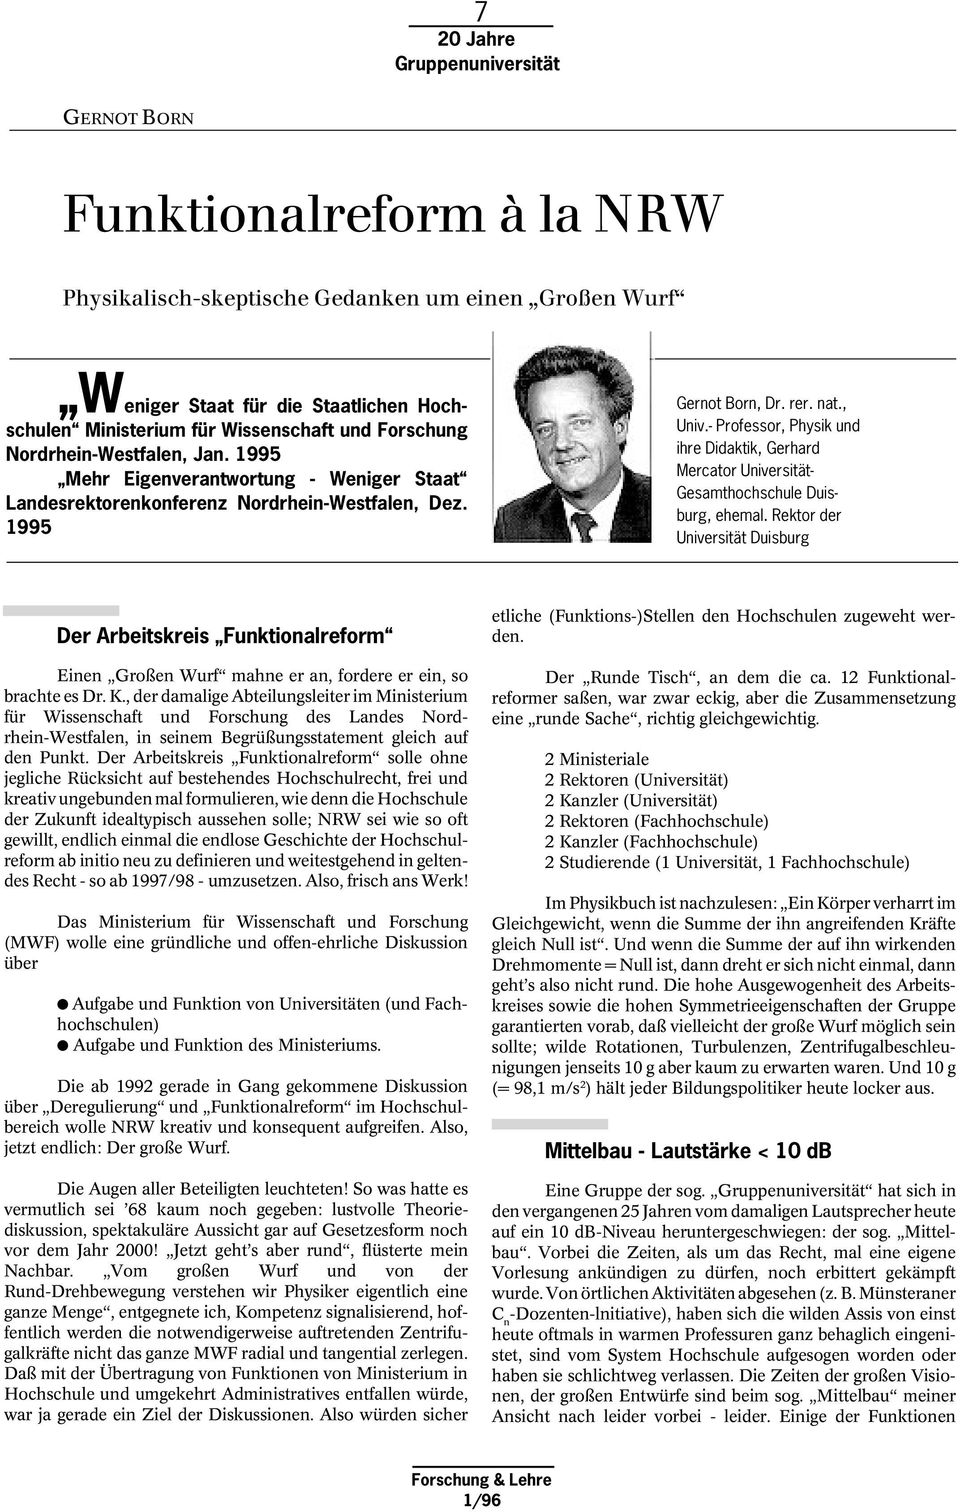 - Professor, Physik und ihre Didaktik, Gerhard Mercator Universität- Gesamthochschule Duisburg, ehemal.